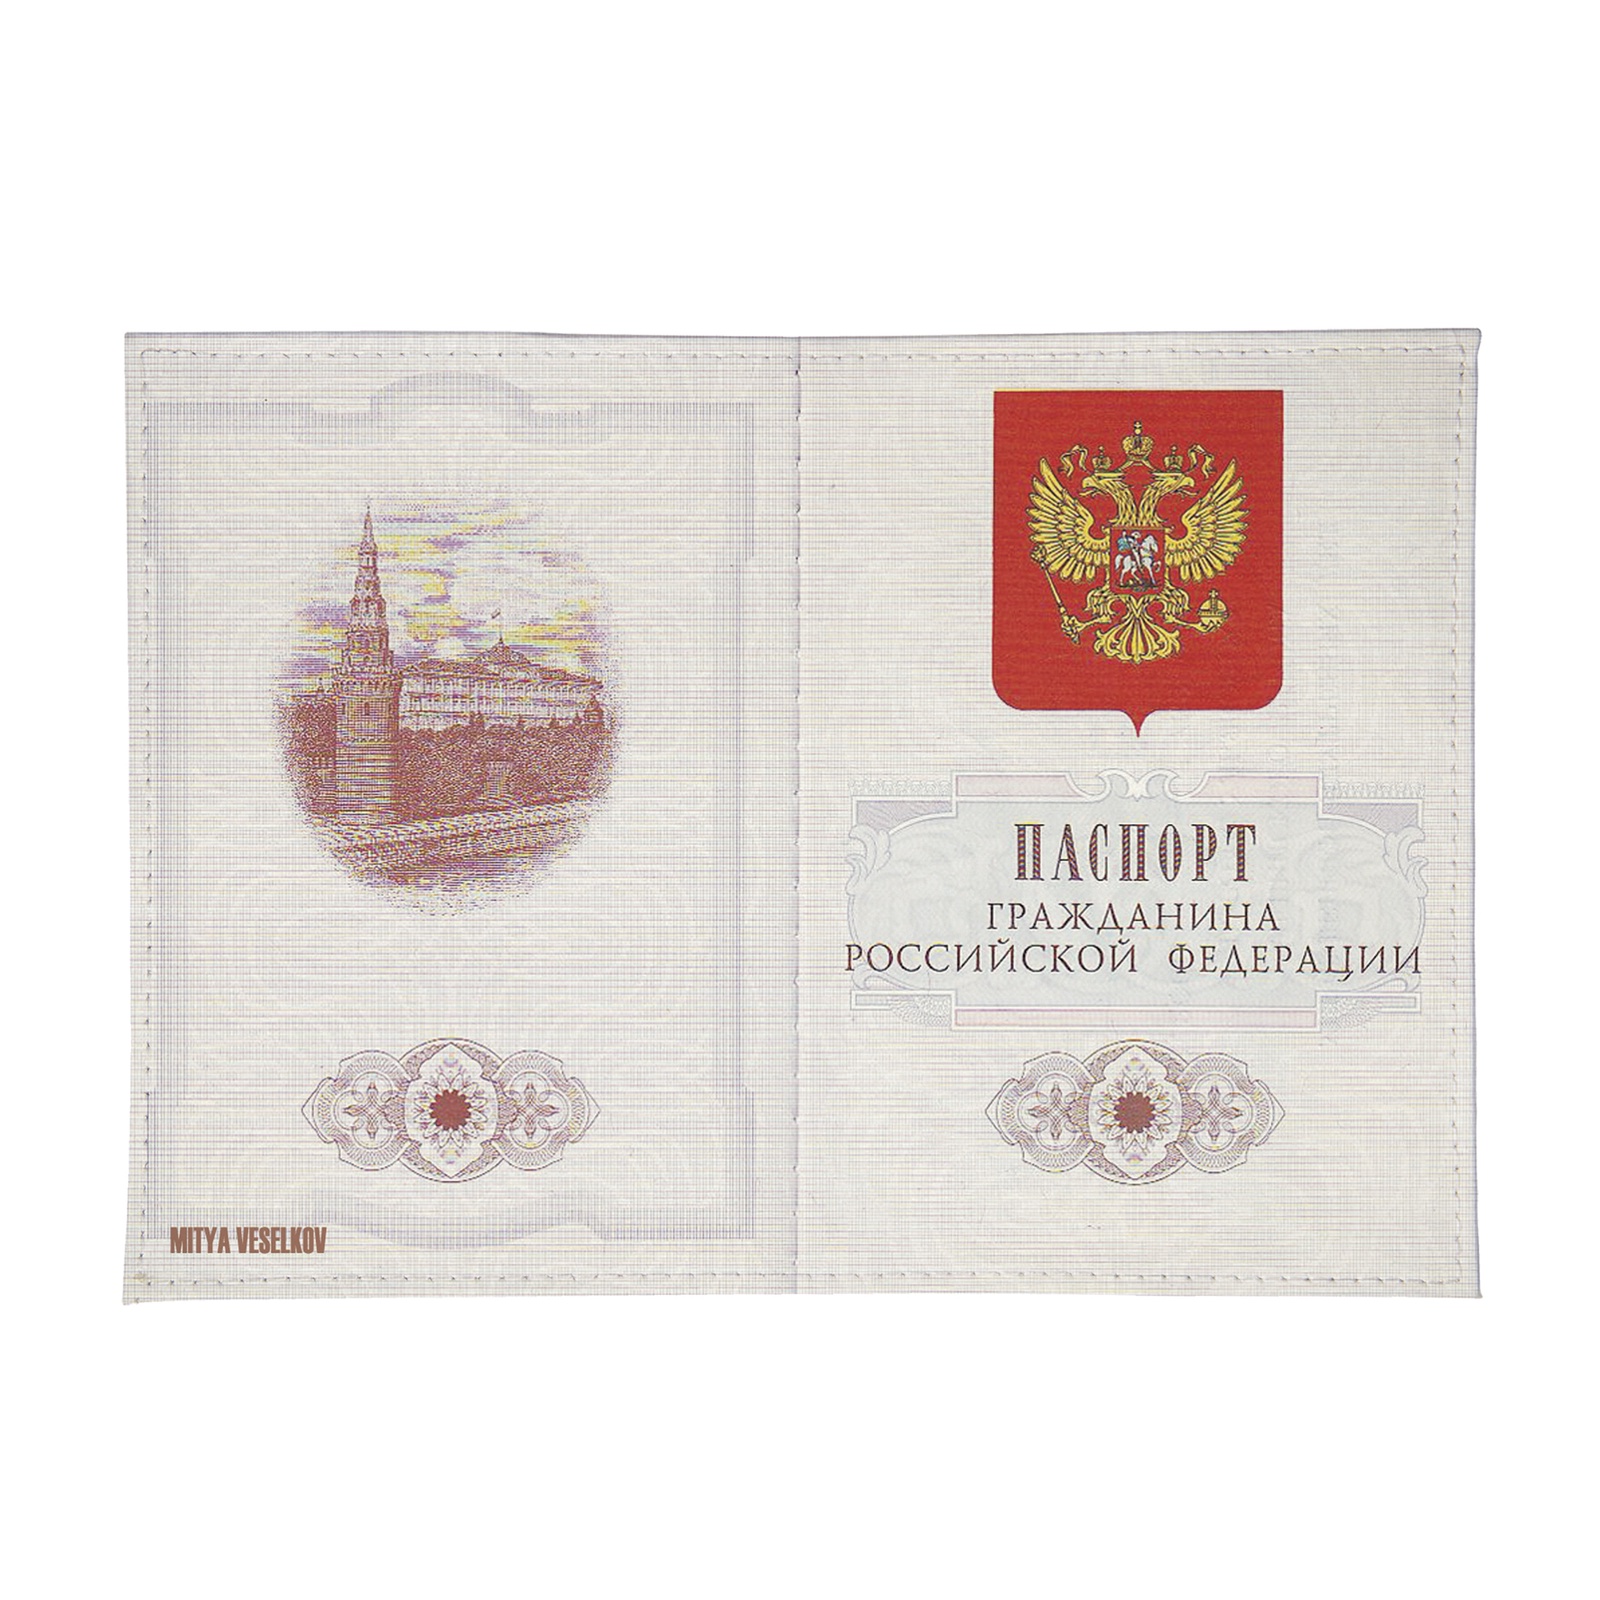 Обложка для паспорта Mitya Veselkov гражданин РФ ozam045